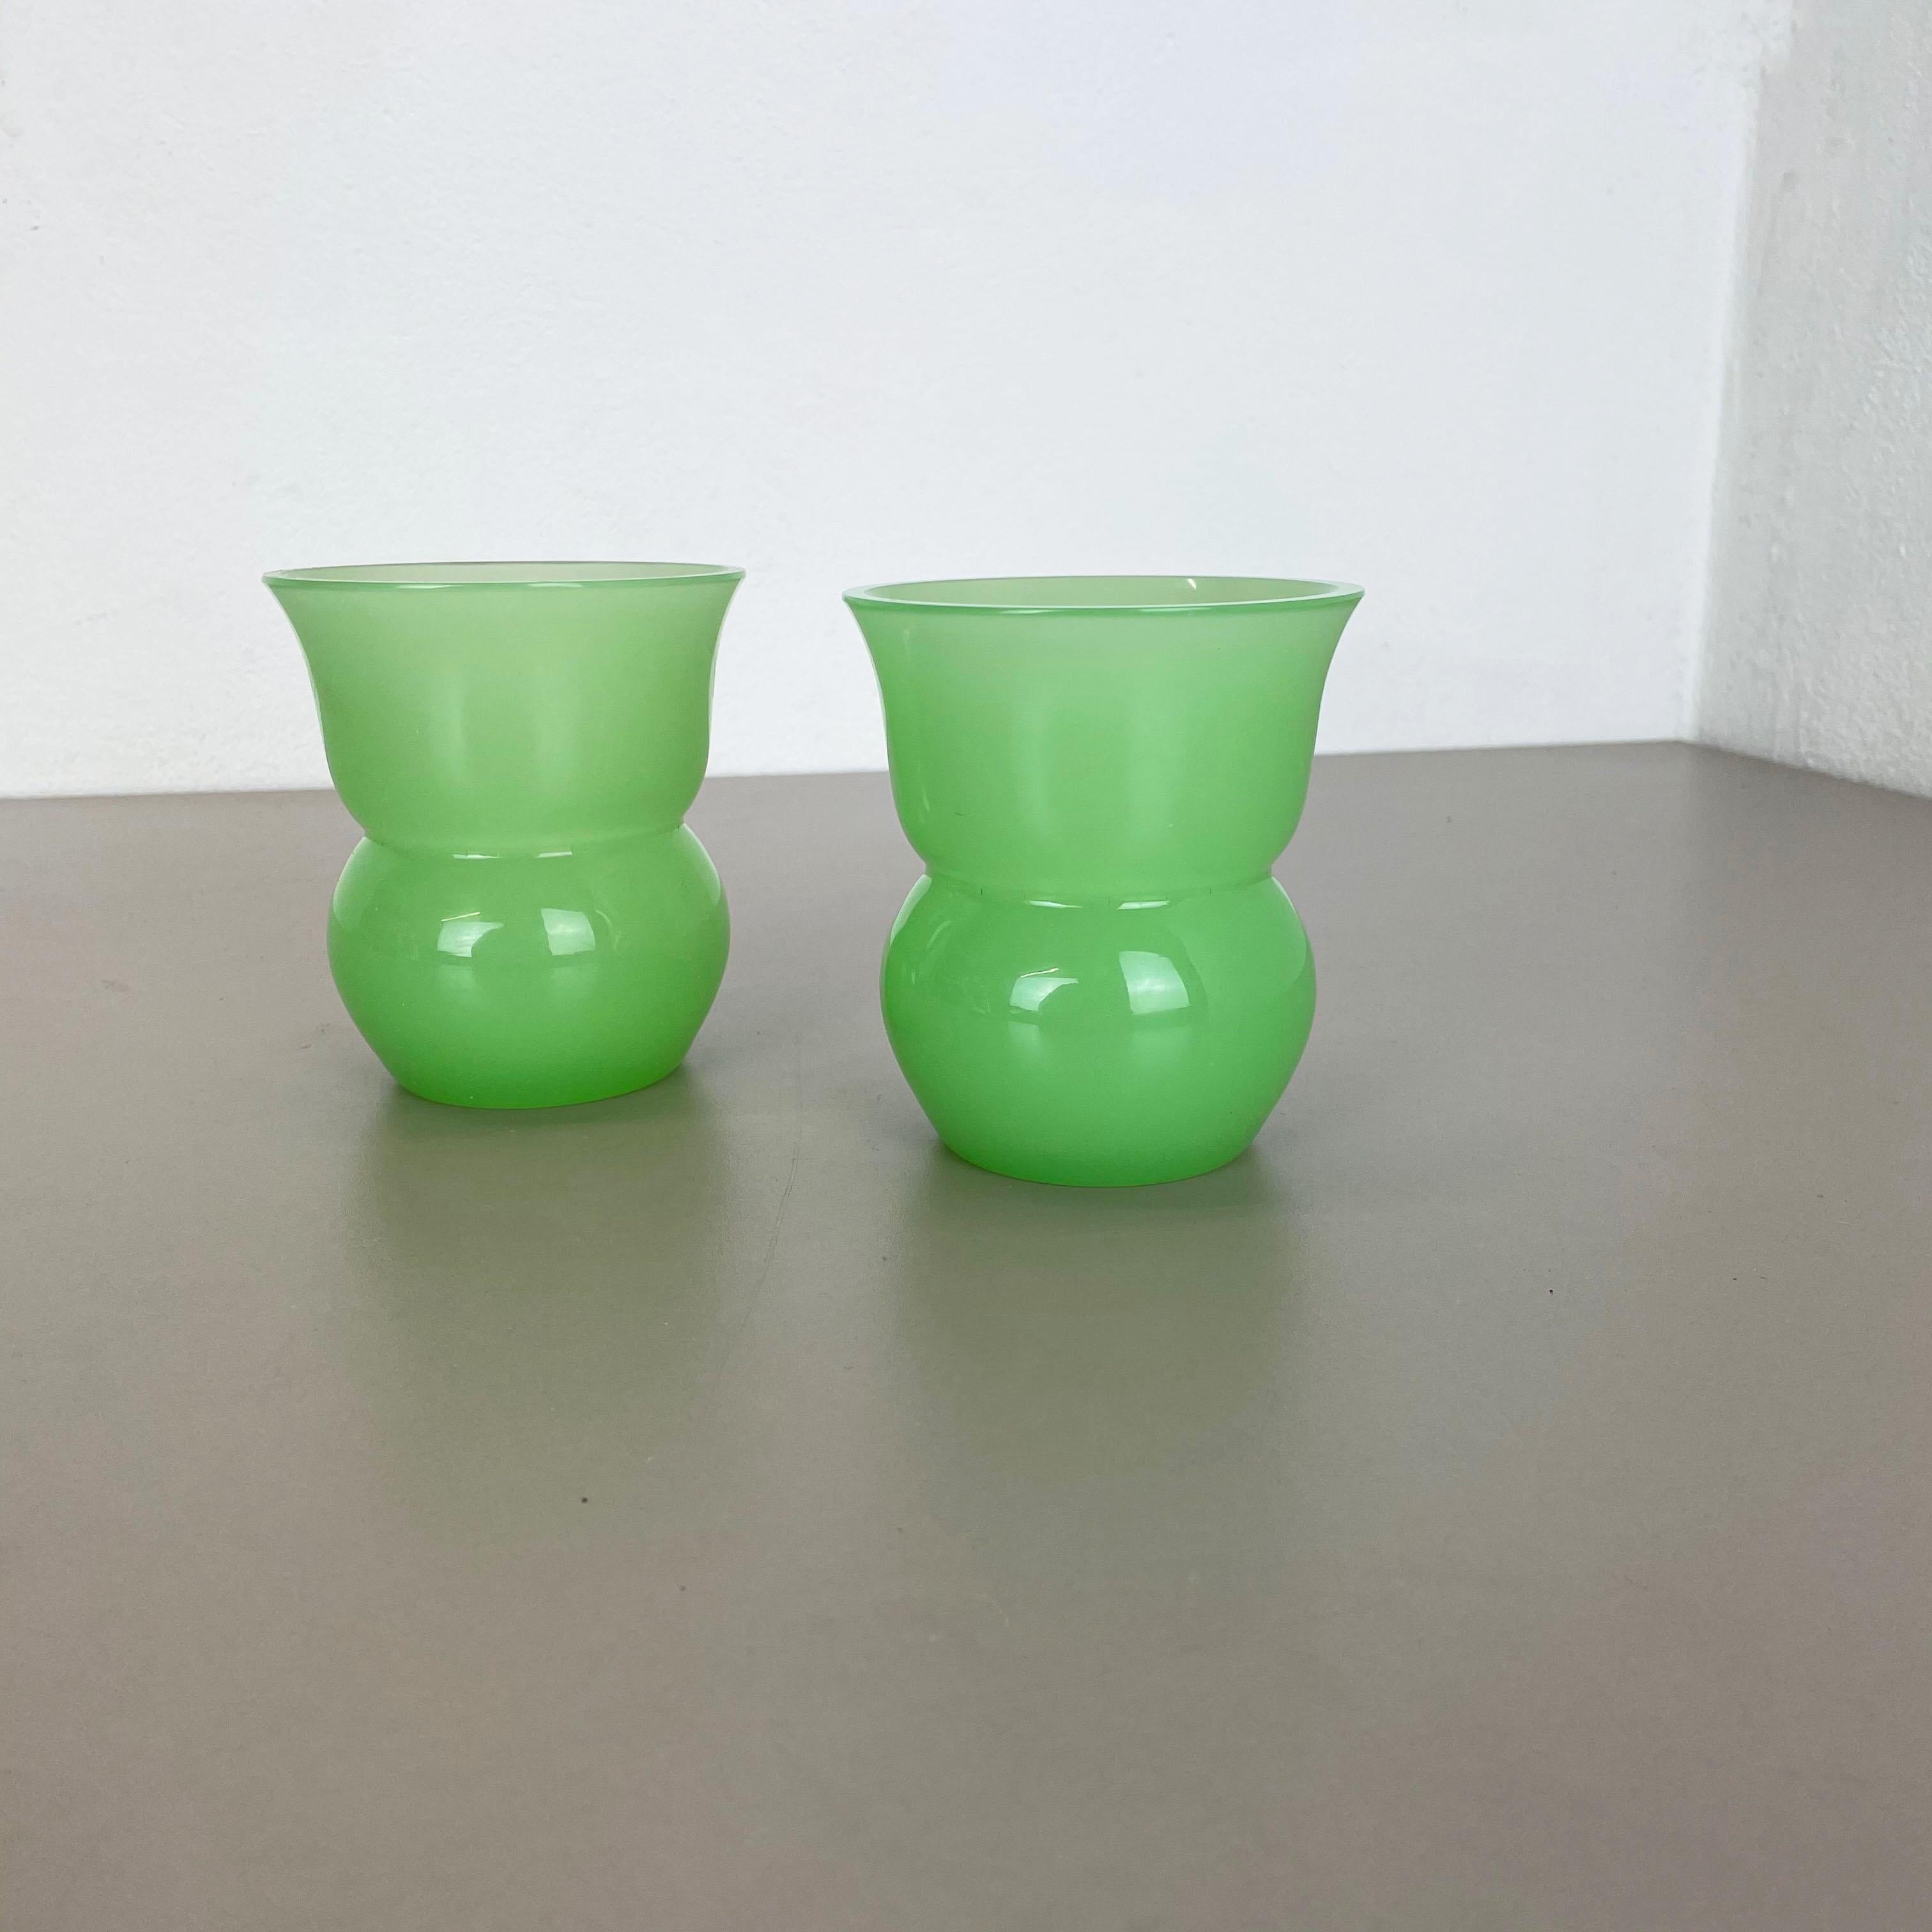 Article :

Ensemble de 2 vases en verre opalin de Murano


Conception :

Gino Cenedese


Producteur :

Cenedese Vetri (marqué sous le vase)


Origine :

Murano, Italie


Décennie :

années 1960-1970


Cet ensemble original